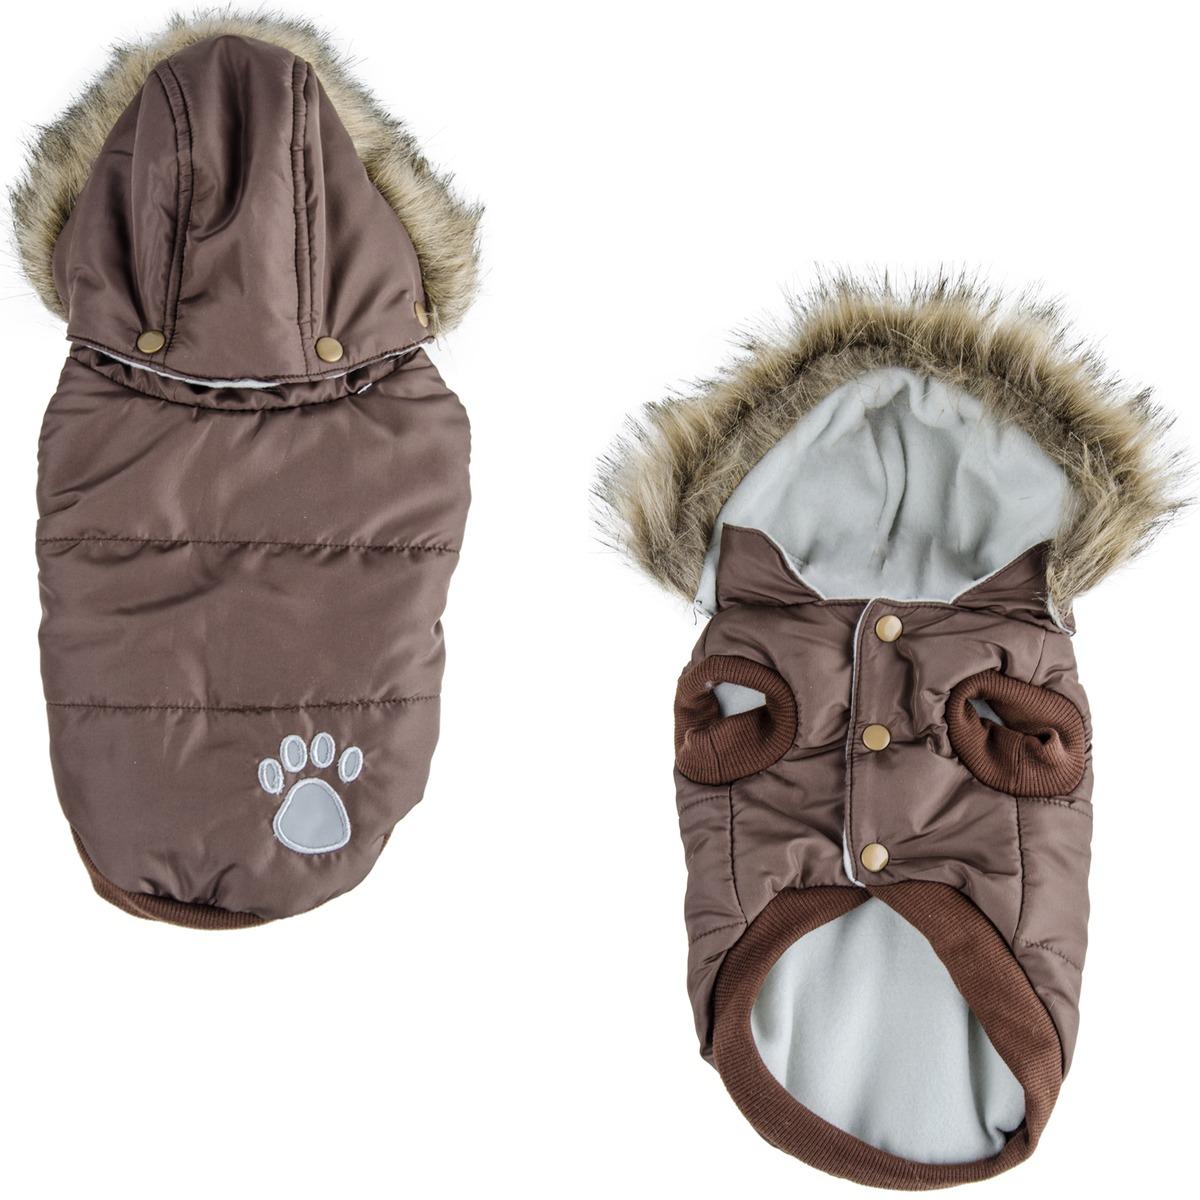 Manteau pour chien doudoune - Taille 25-35-45 cm - Marron